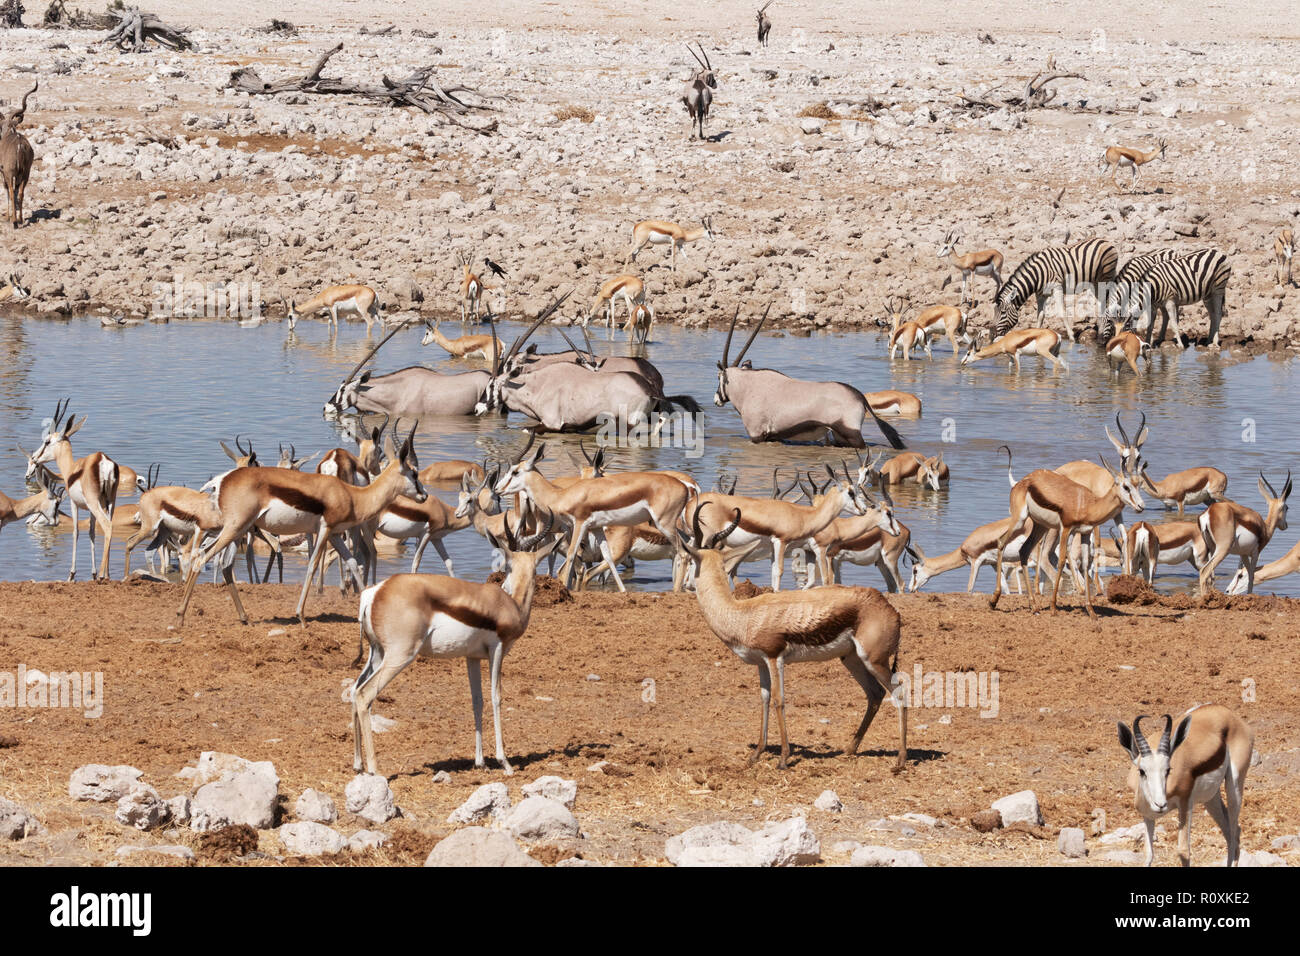 La Namibie les animaux sauvages - une variété de faune africaine autour d'un étang, camp de Okaukuejo, Etosha National Park, Namibie, Afrique du Sud Banque D'Images